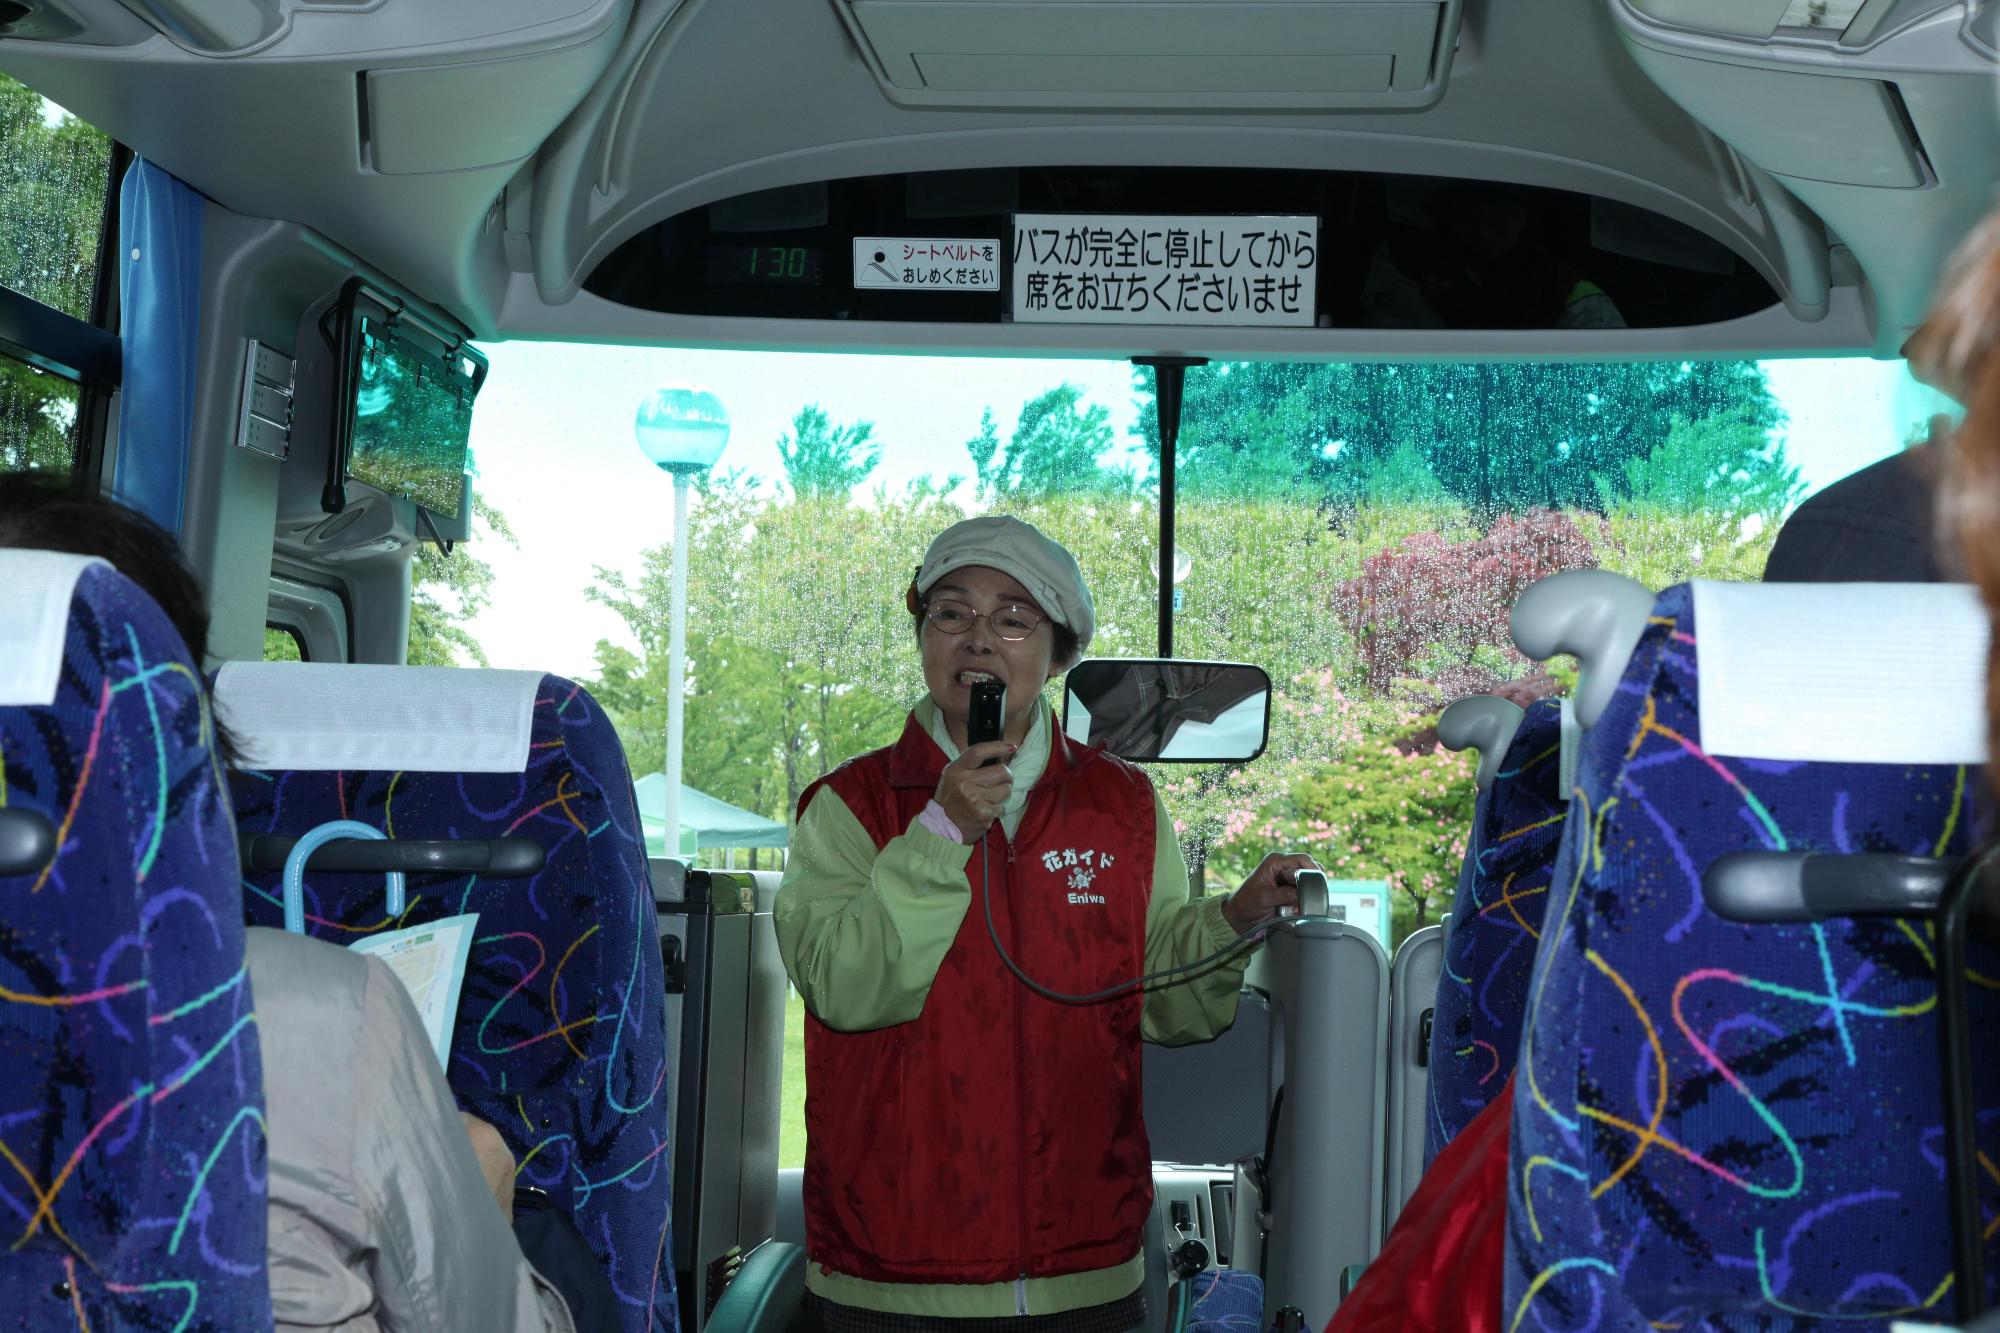 ガーデンツアーのバス内で「花ガイド」とプリントされた赤いベストを着て、ガイドを行う女性の写真